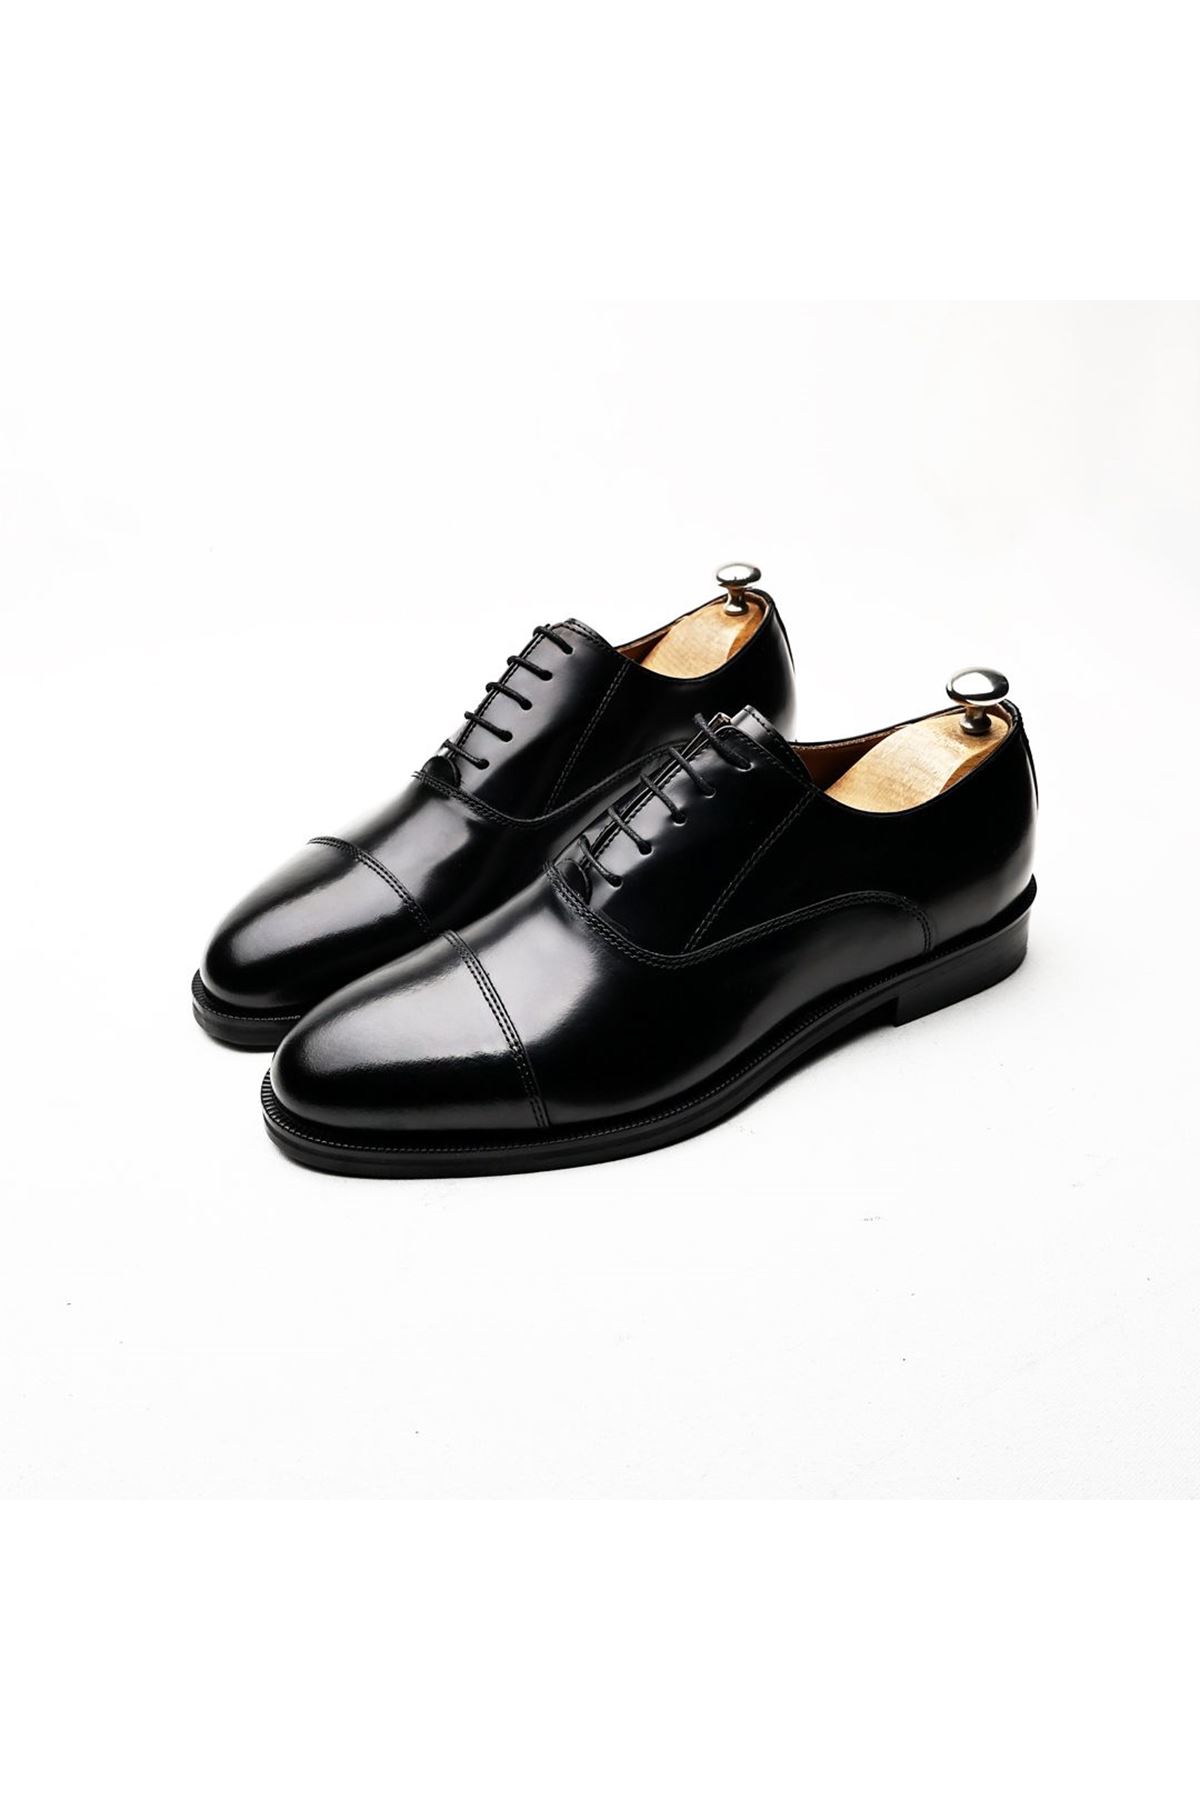 Boy Uzatan Ayakkabı Gizli Topuklu Hakiki Deri Siyah Gazzella Erkek Klasik Ayakkabı MYY232